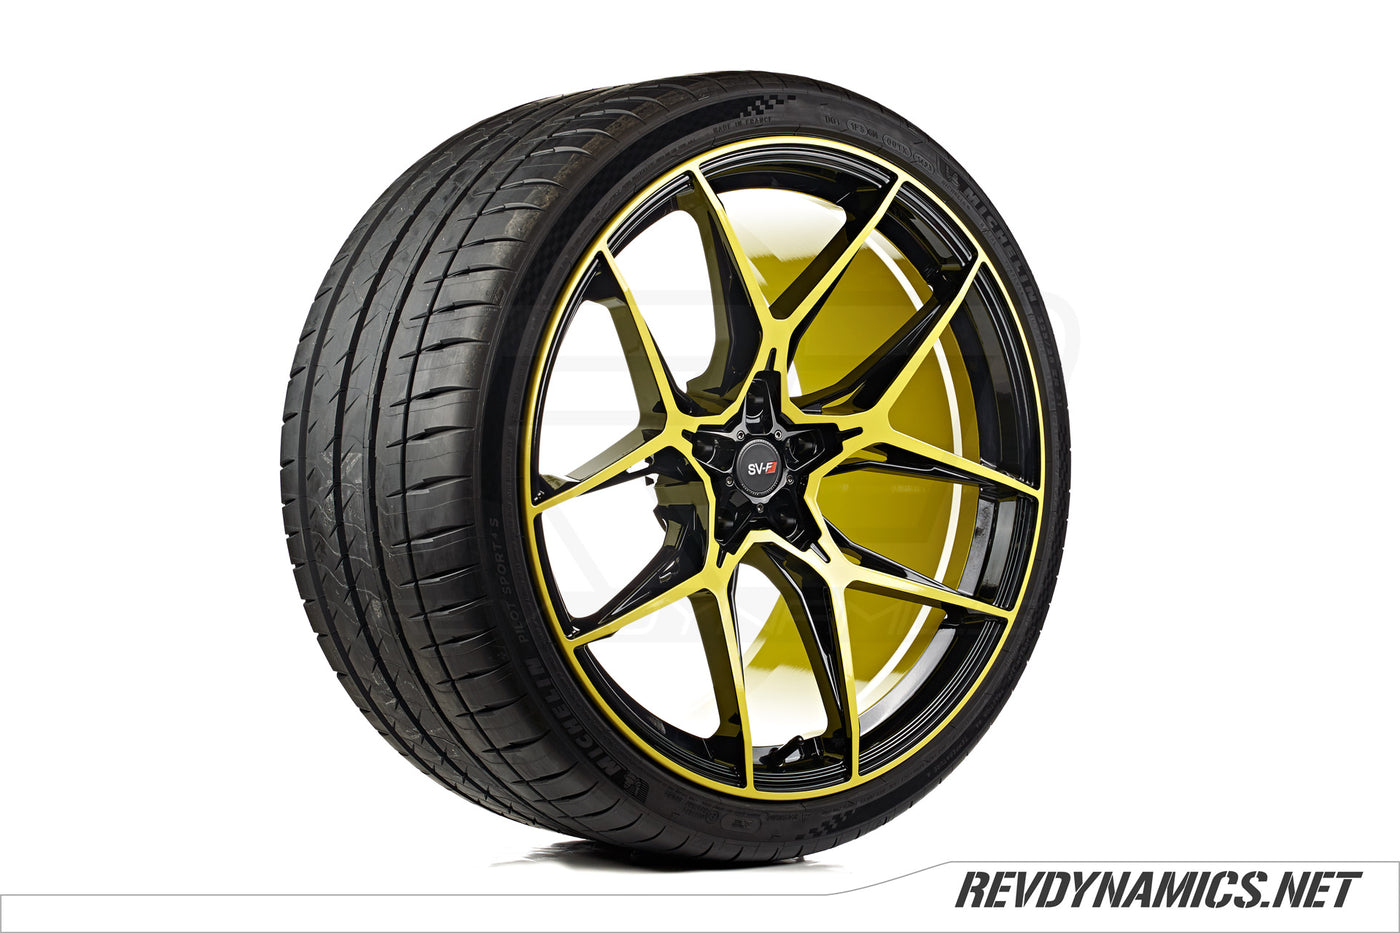 Savini SV-F5 21" Wheel in Accelerate Yellow and Black